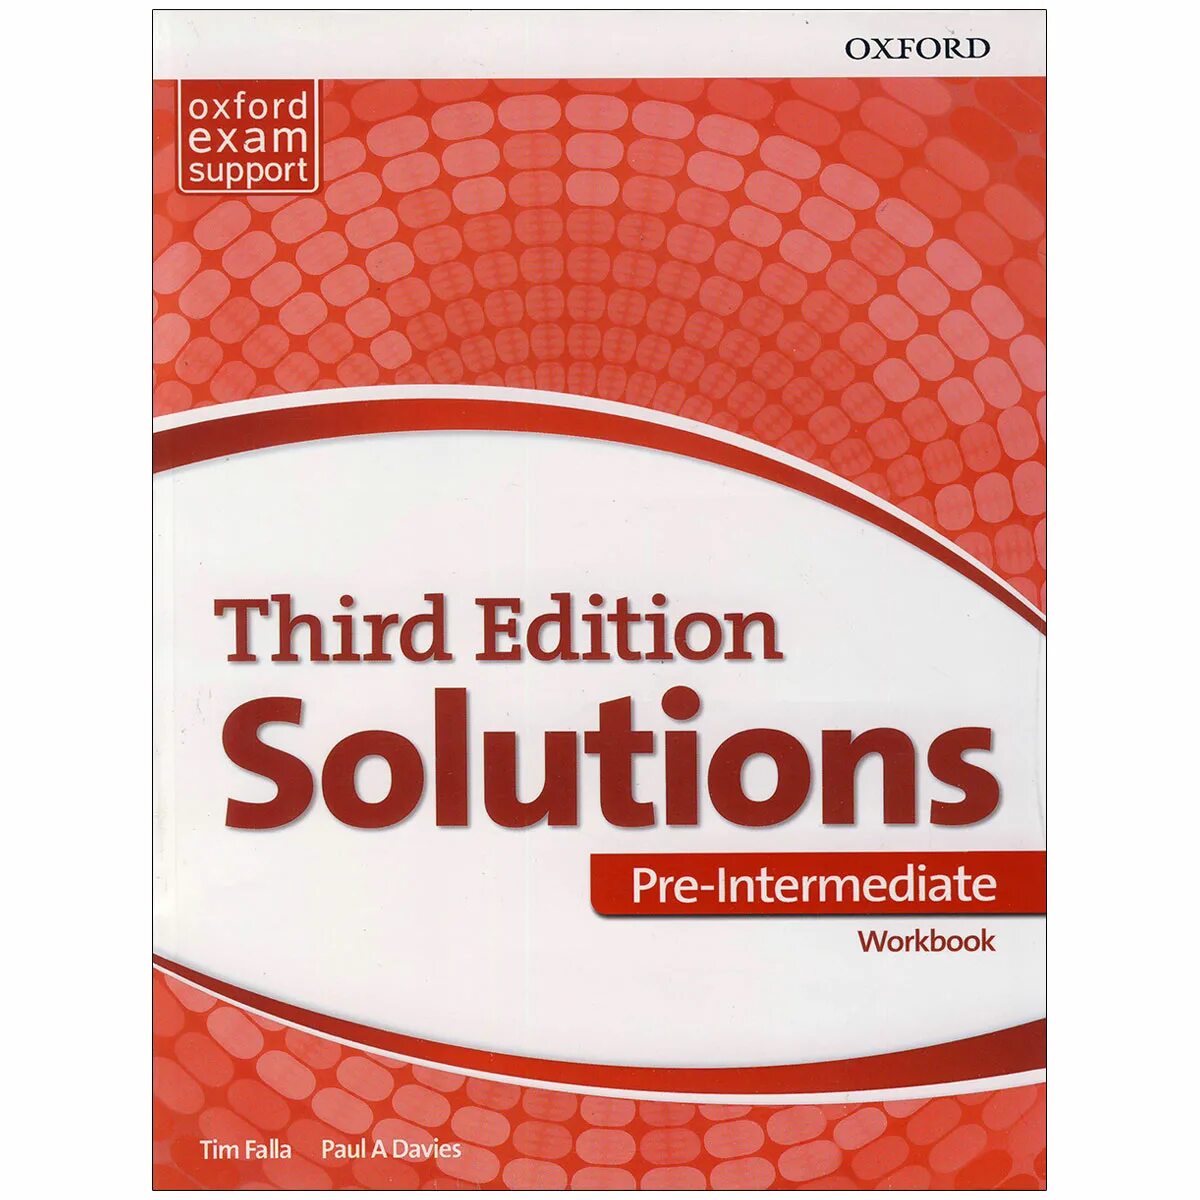 Солюшенс pre Intermediate. Оксфорд solutions pre-Intermediate 3 аудио. Solution Intermediate 3 Edition. Third Edition solutions Intermediate.